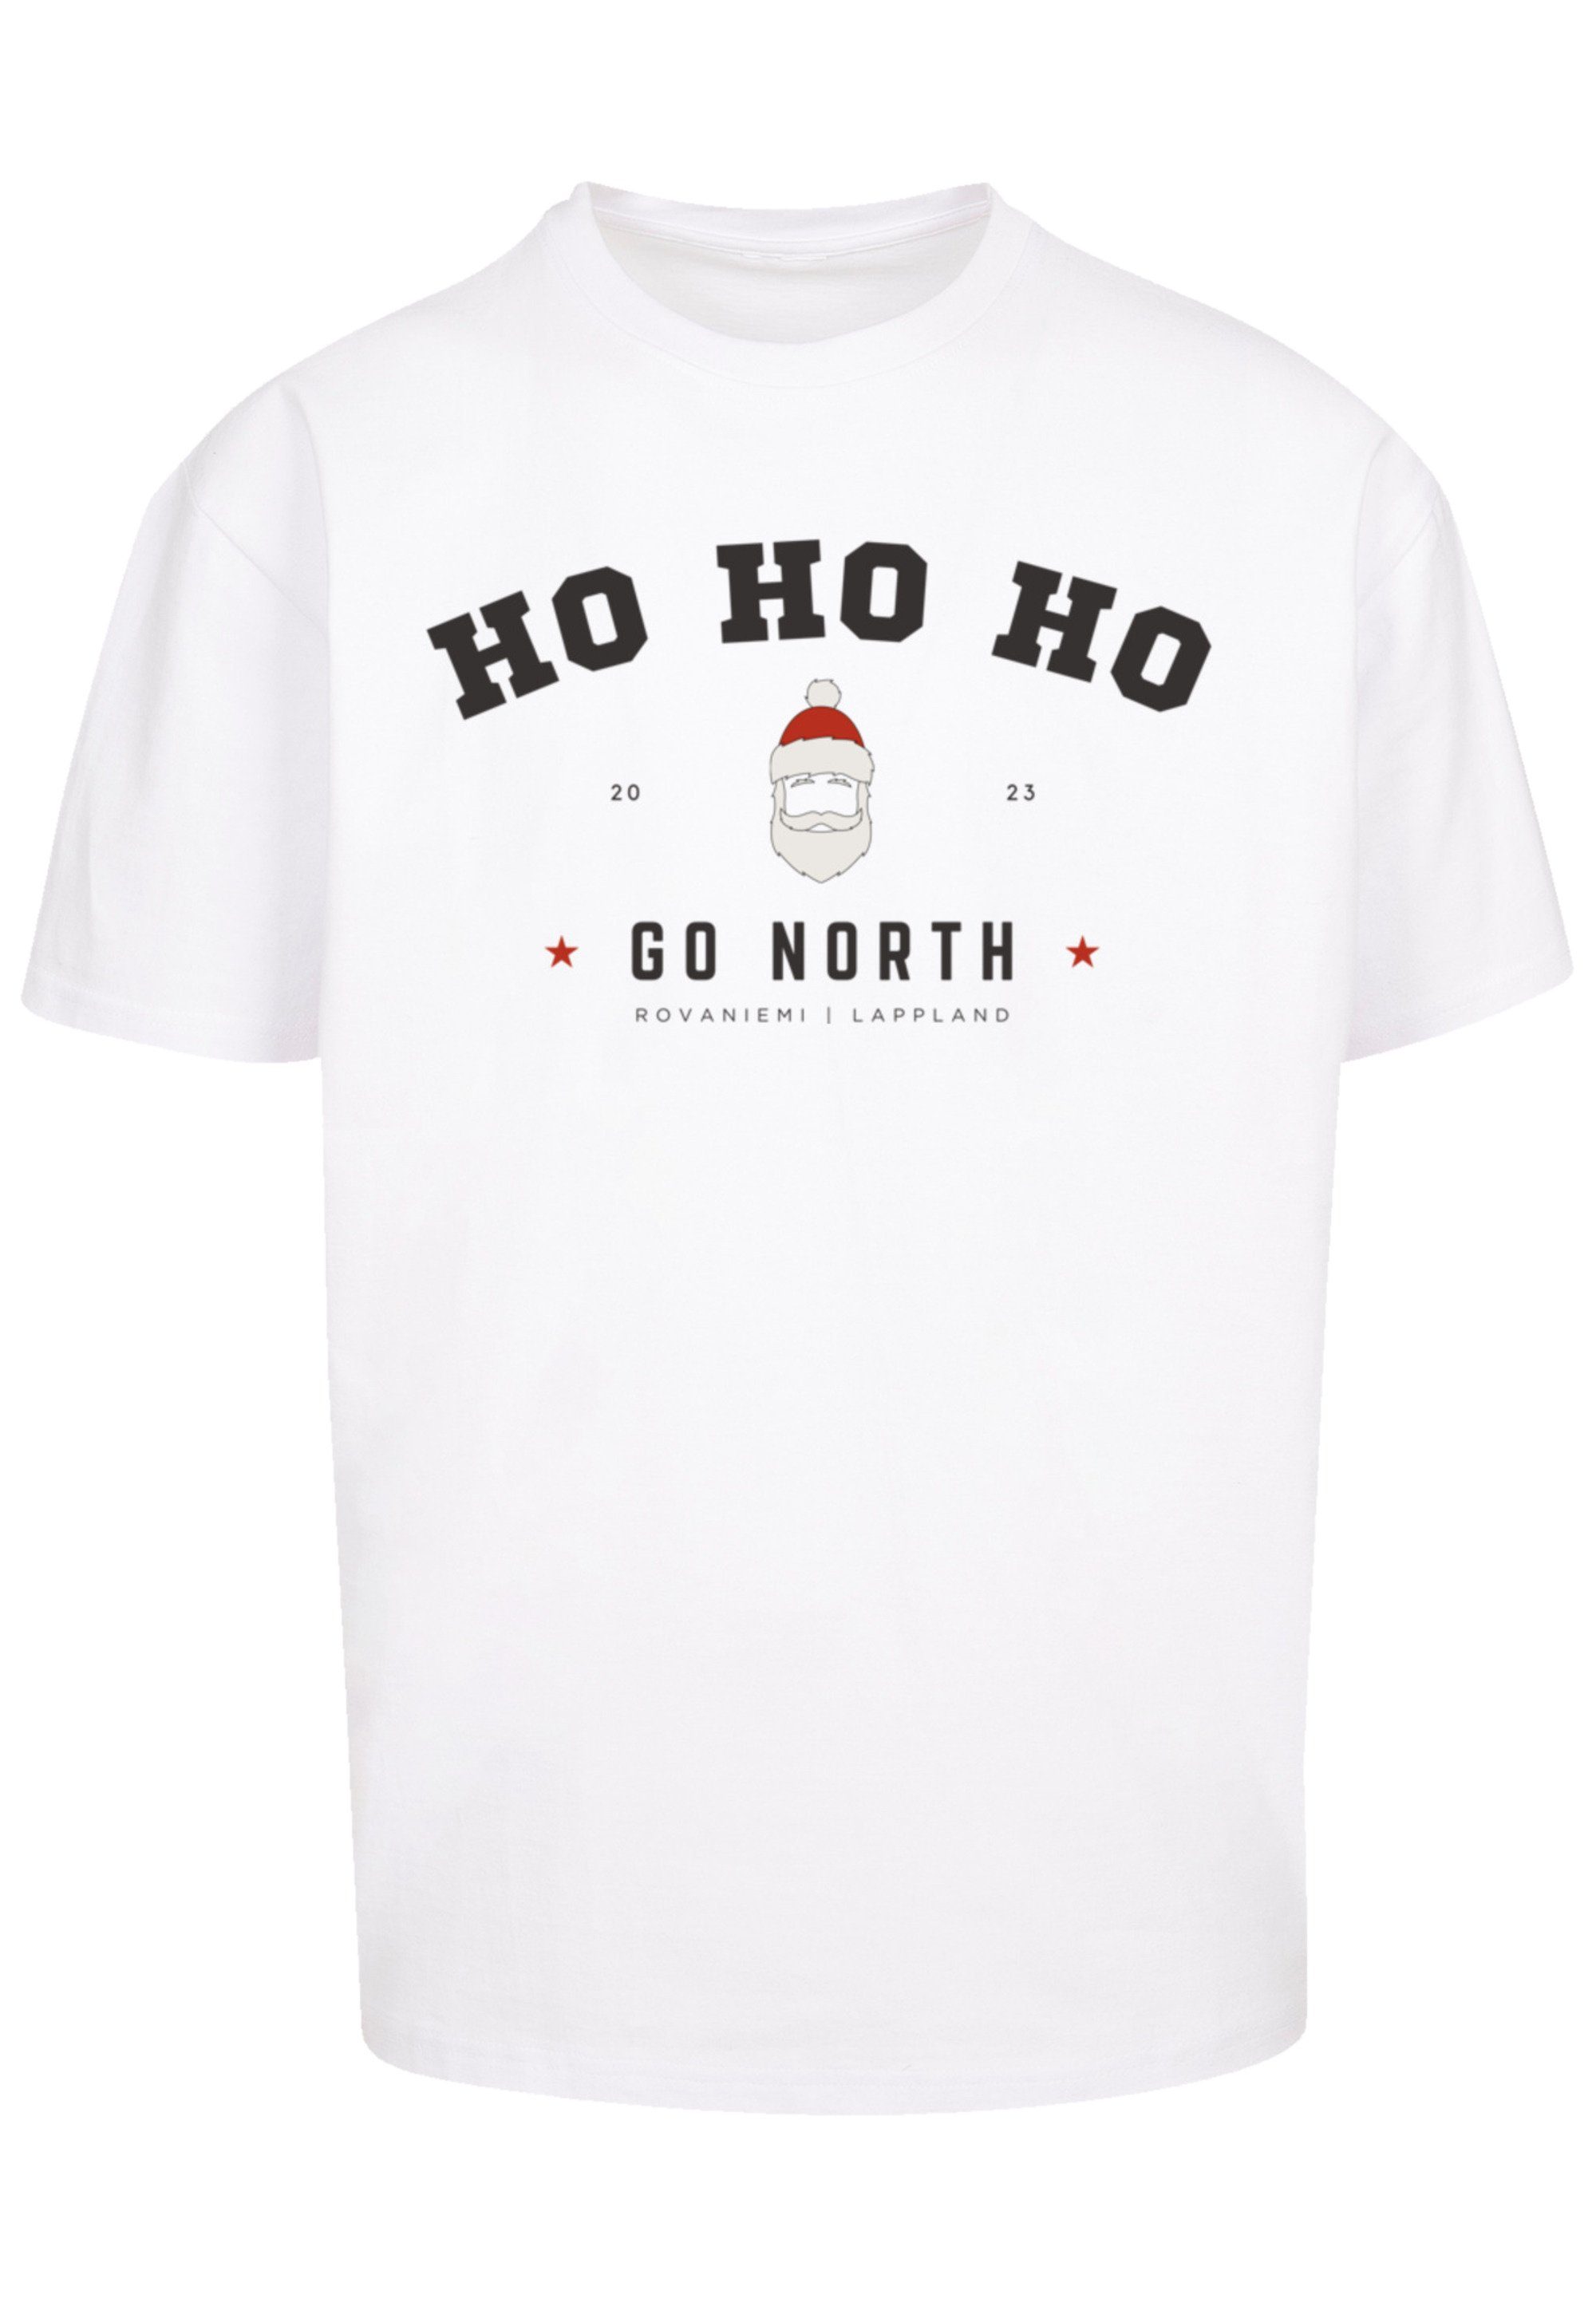 F4NT4STIC T-Shirt Ho Weihnachten Logo Ho Santa Ho weiß Geschenk, Weihnachten, Claus